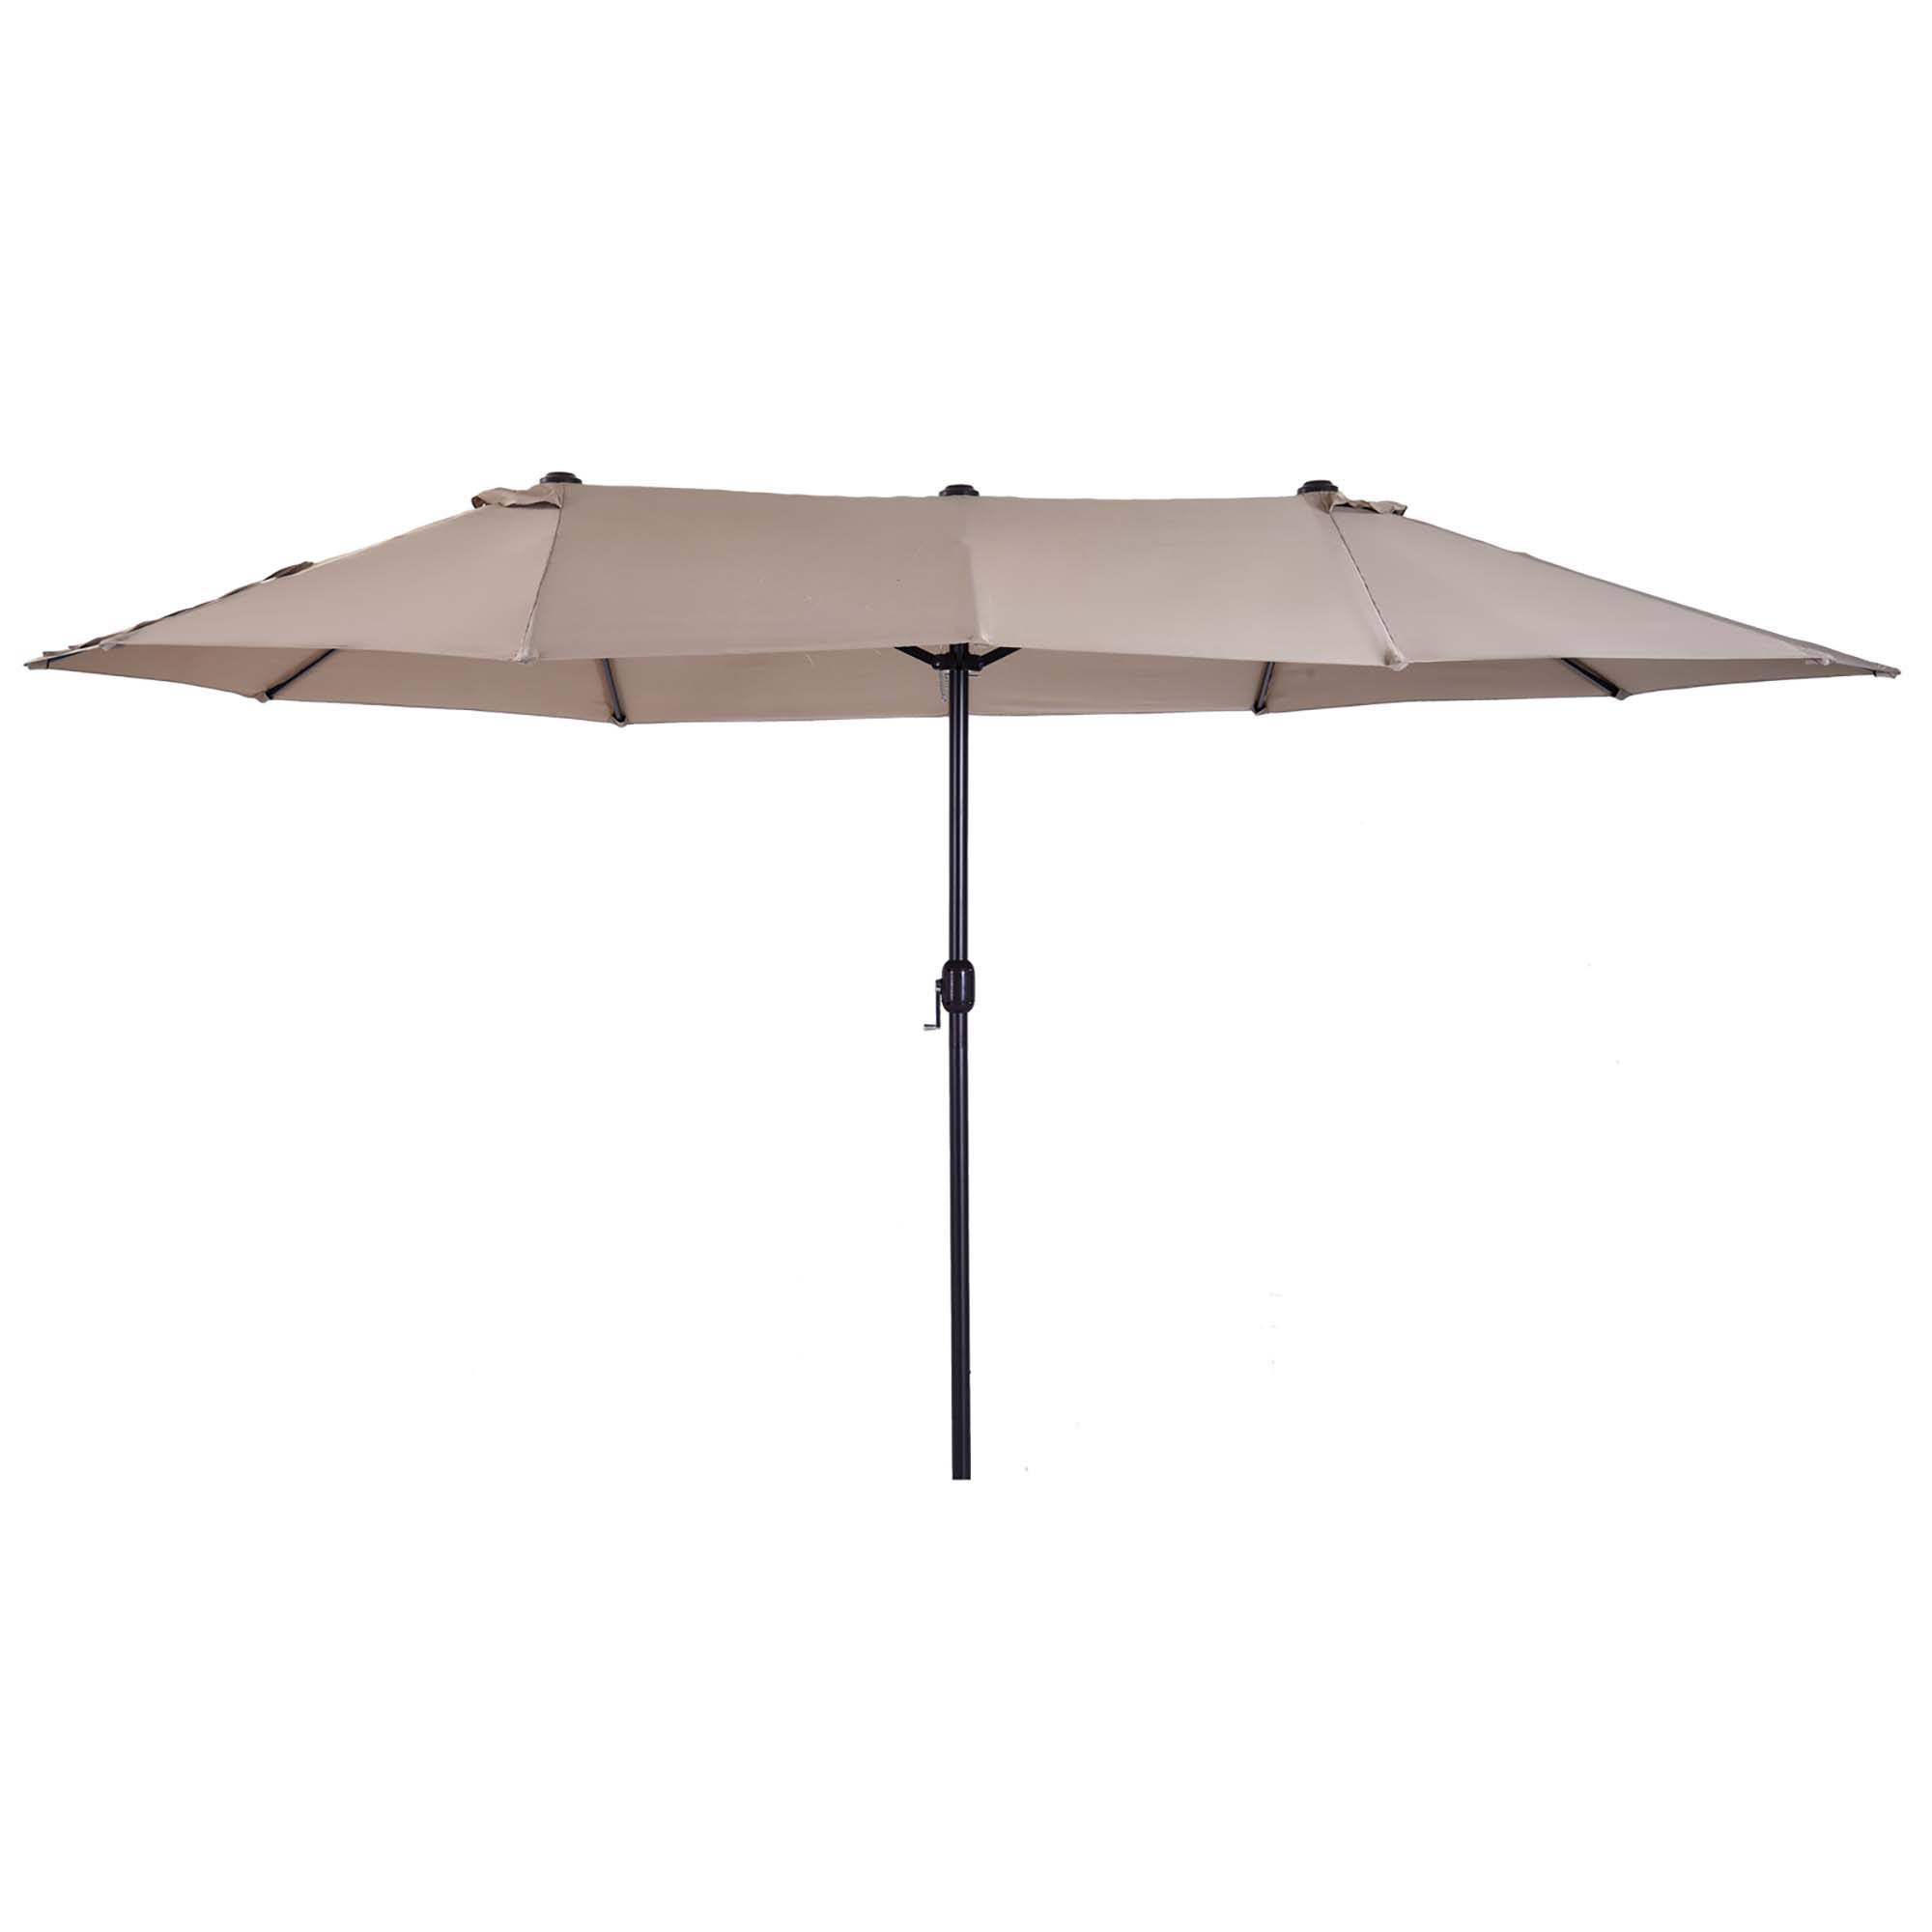 Outsunny Outdoor Double Canopy Umbrella